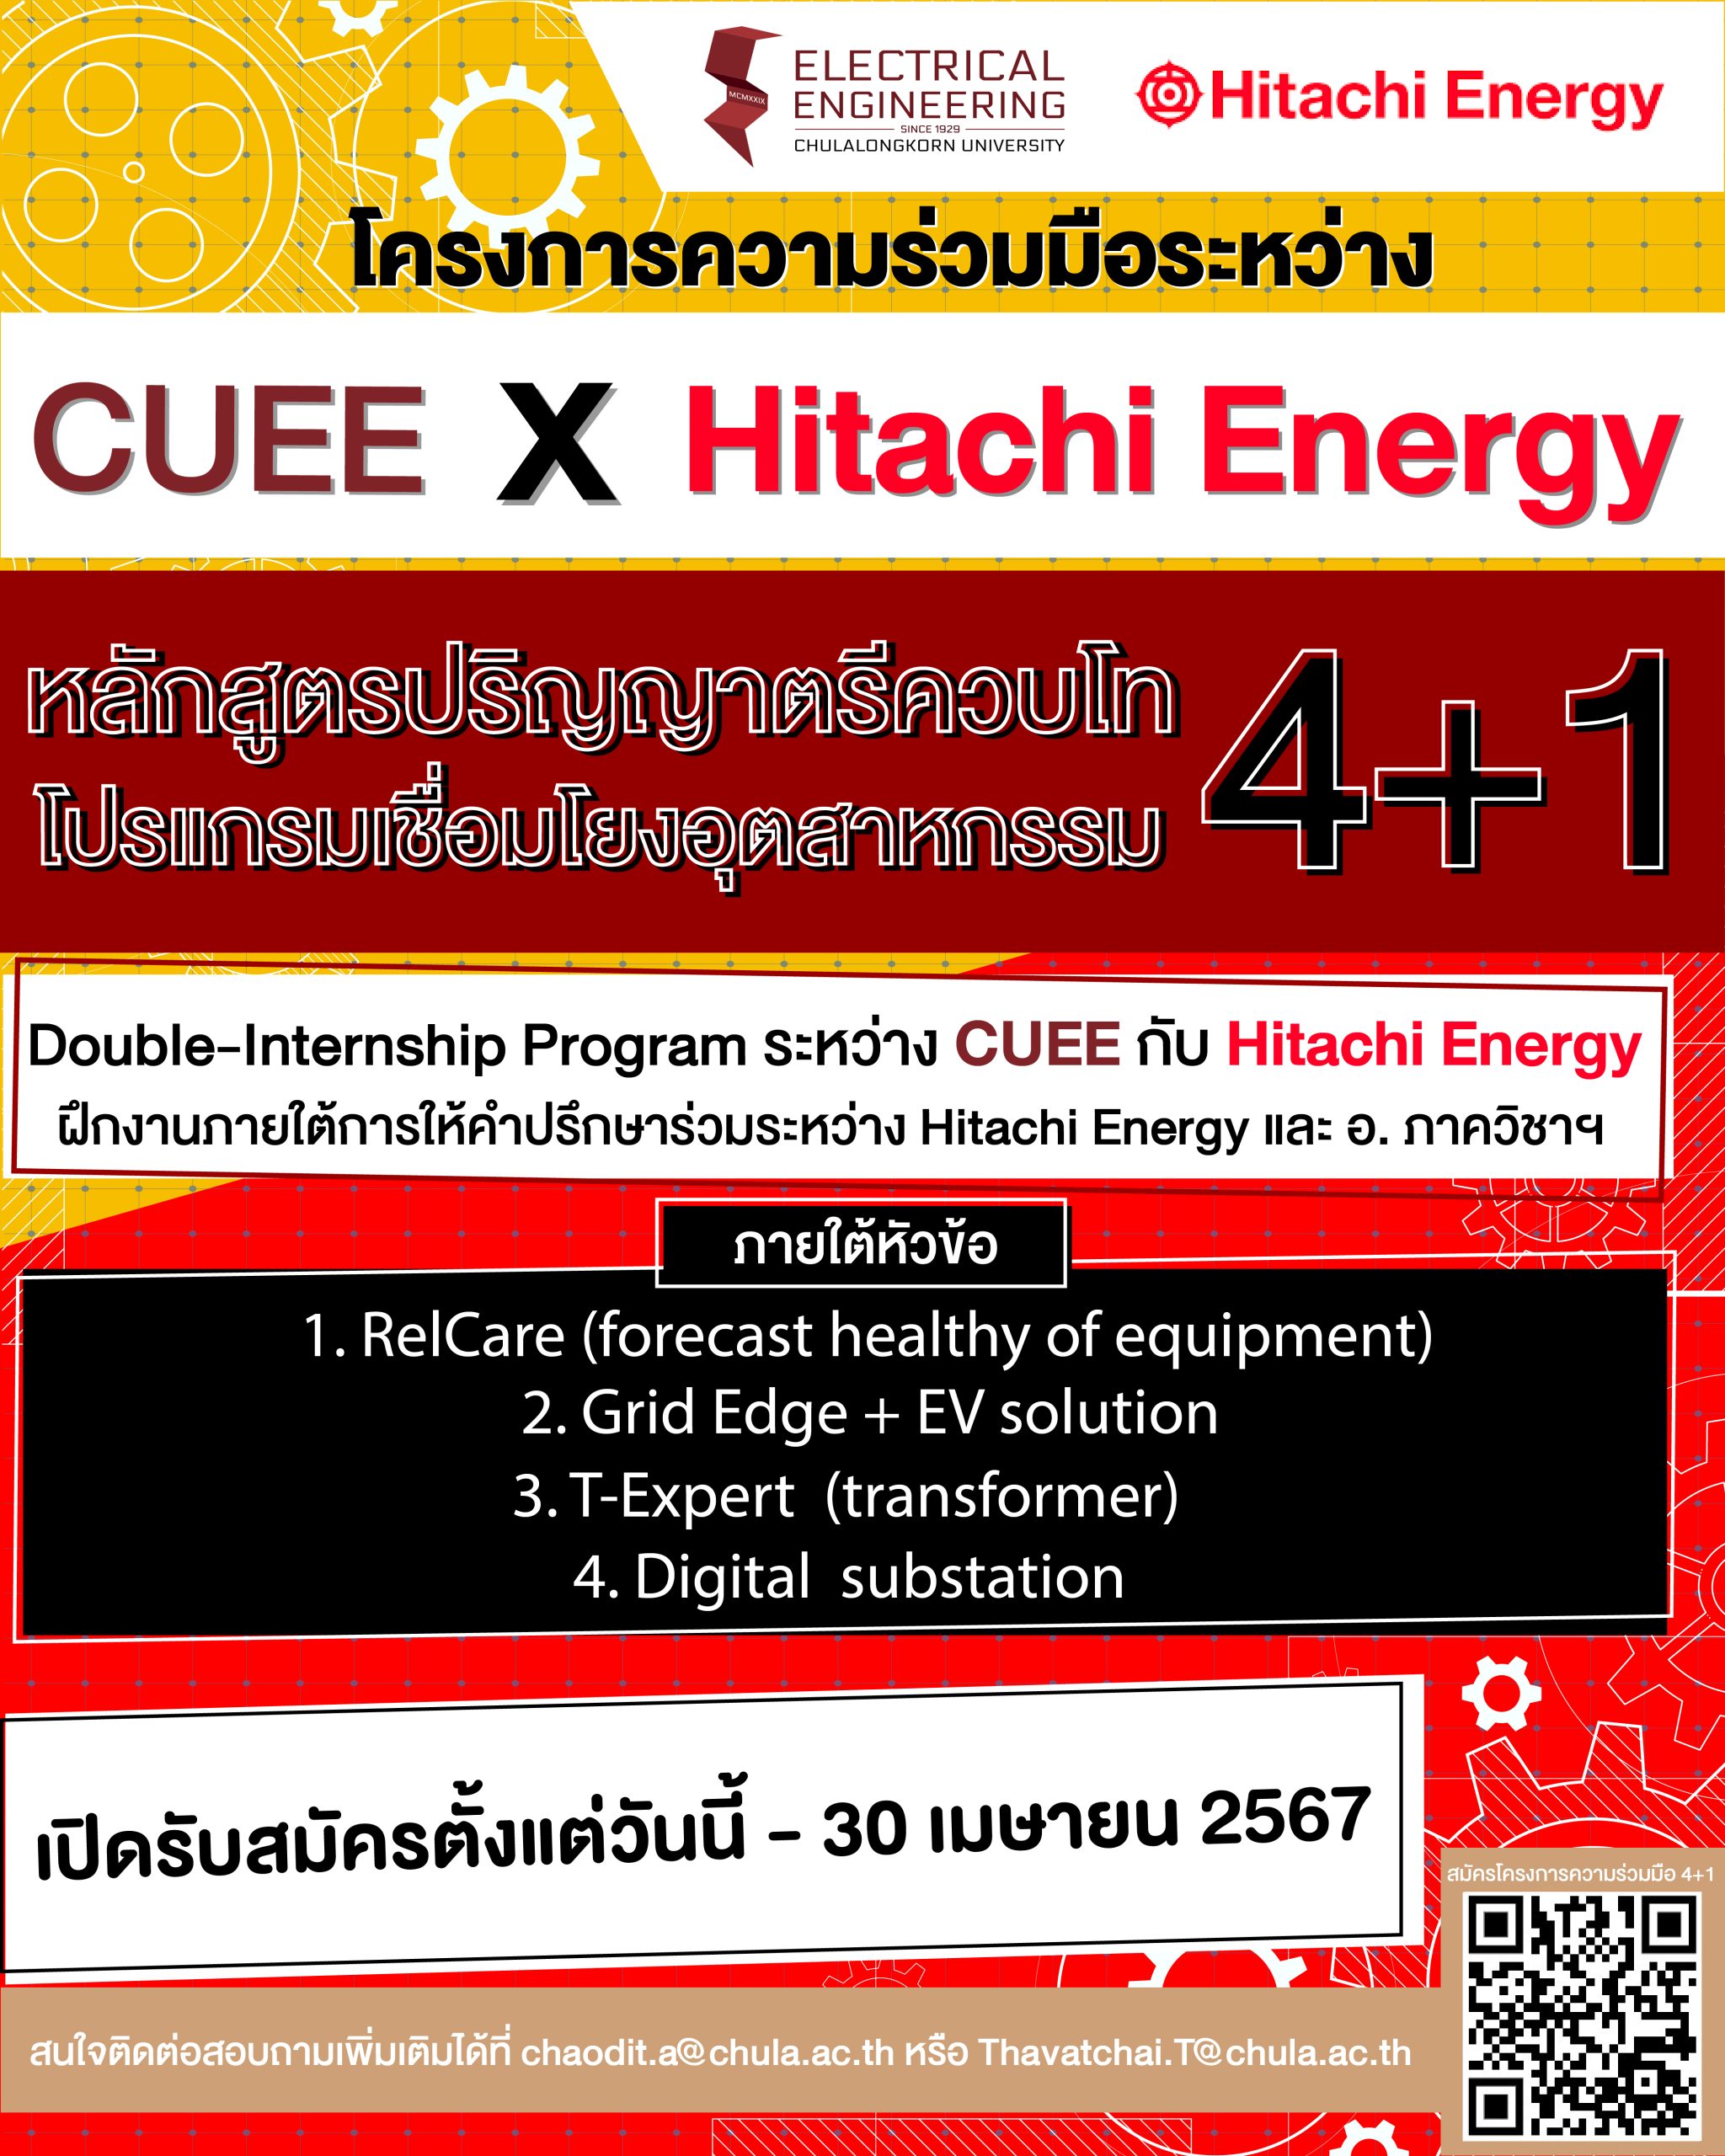 รับสมัครหลักสูตรปริญญาตรีควบโท 4+1 โปรแกรมเชื่อมโยงอุตสาหกรรม CUEE x Hitachi Energy สมัครตั้งแต่วันนี้ – 30 เมษายน 2567